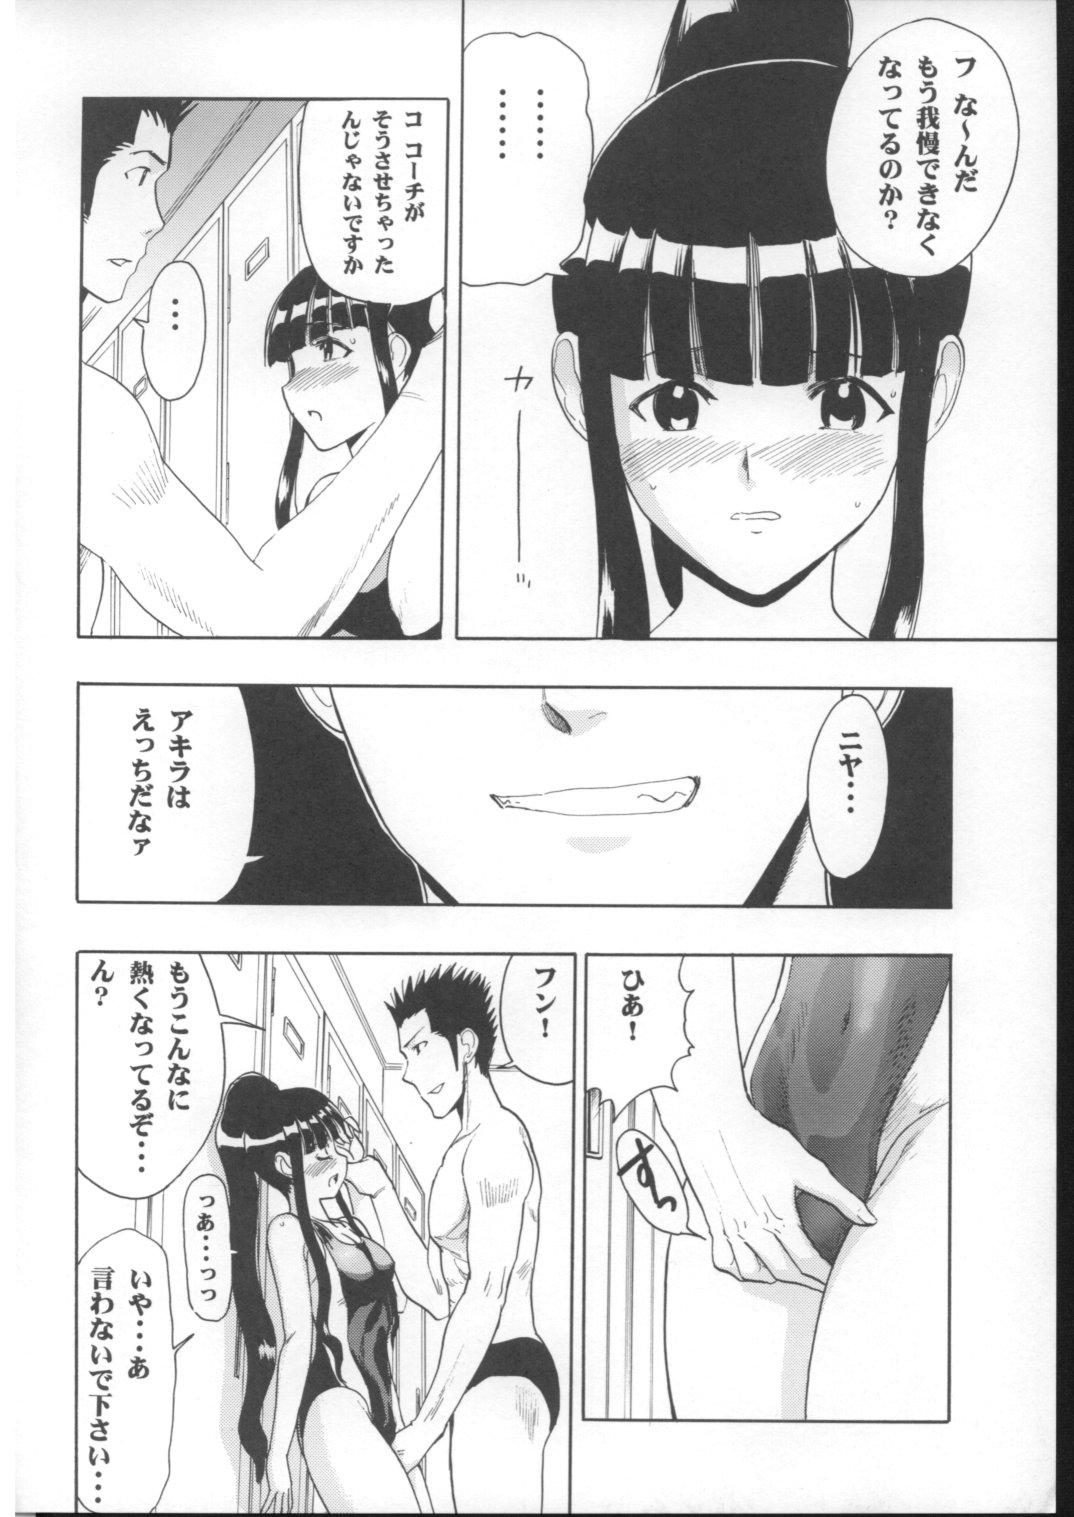 Rub Mahomizu - Mahou sensei negima Caseiro - Page 11